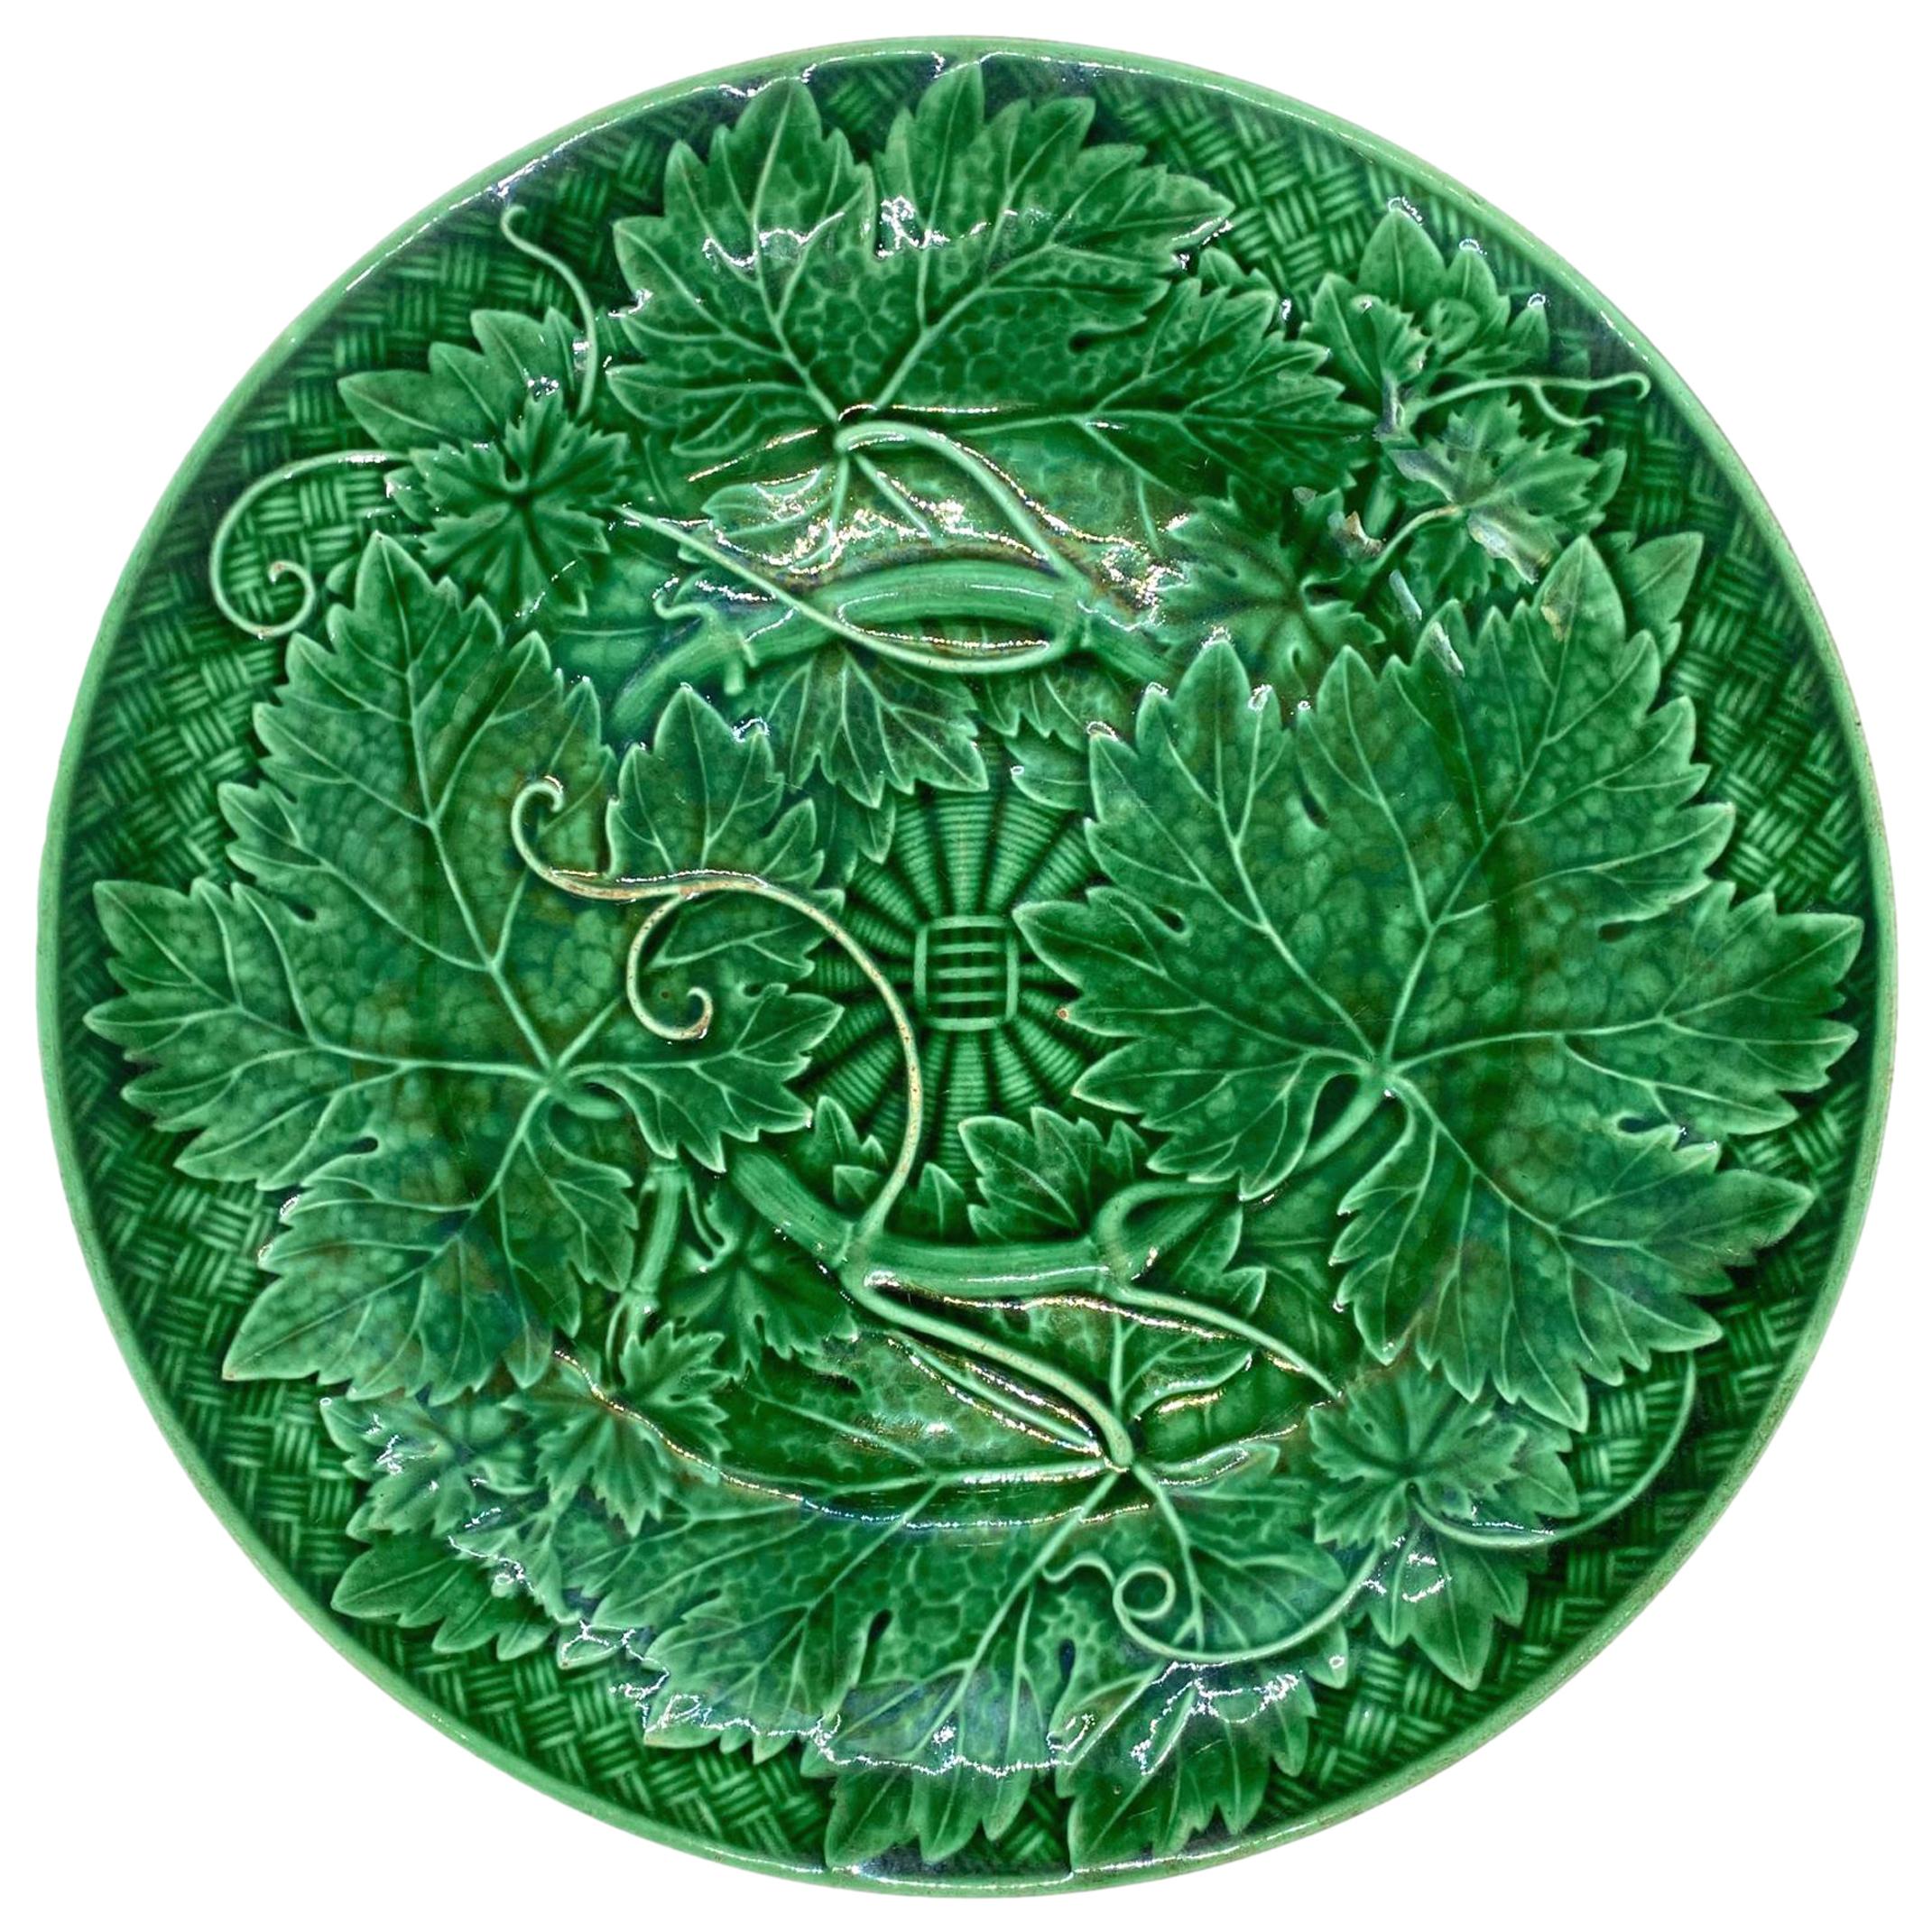 Wedgwood Majolica Green Glazed Basket Weave Plate, English, ca. 1885